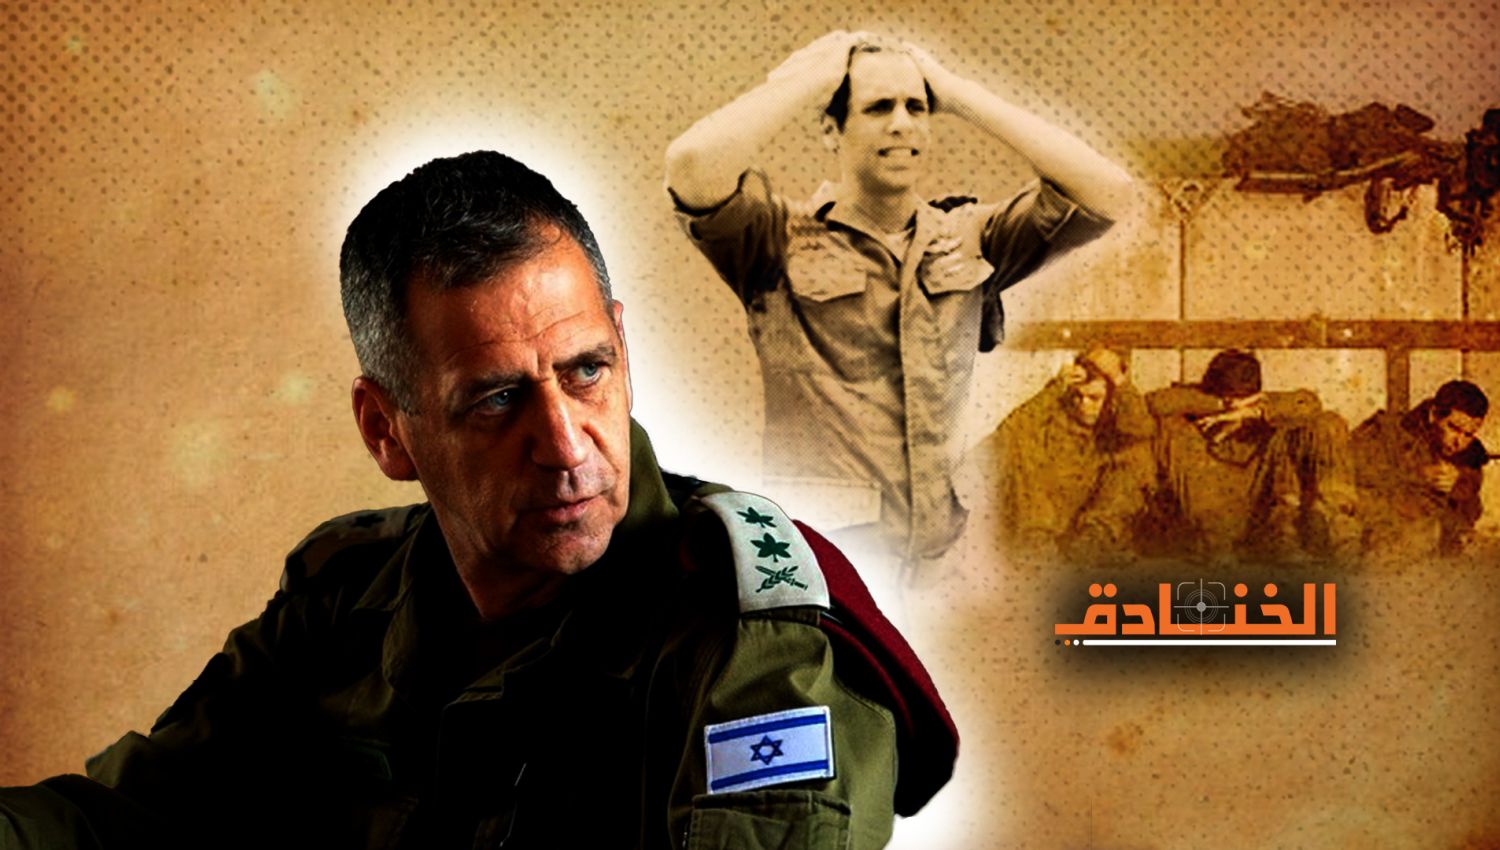 الخنادق - هآرتس: كوخافي هو أحد رؤساء الأركان الضعفاء جدا في تاريخ "إسرائيل"